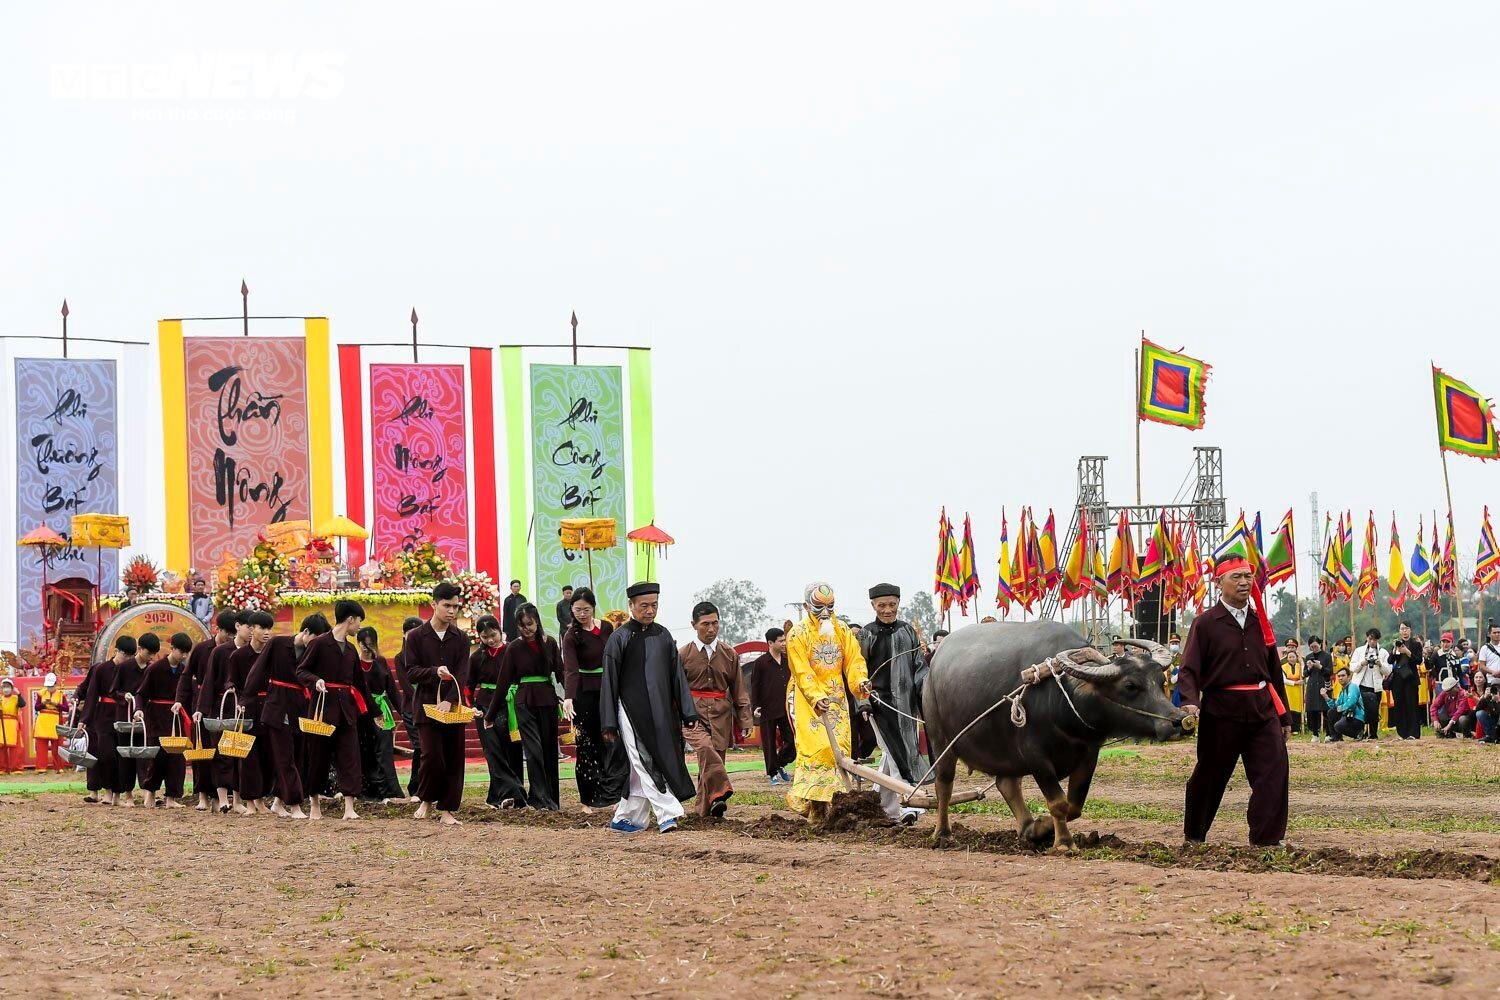 Lão nông đóng giả vua, mặc long bào đi cày trong lễ hội Tịch điền ở Hà Nam- Ảnh 11.